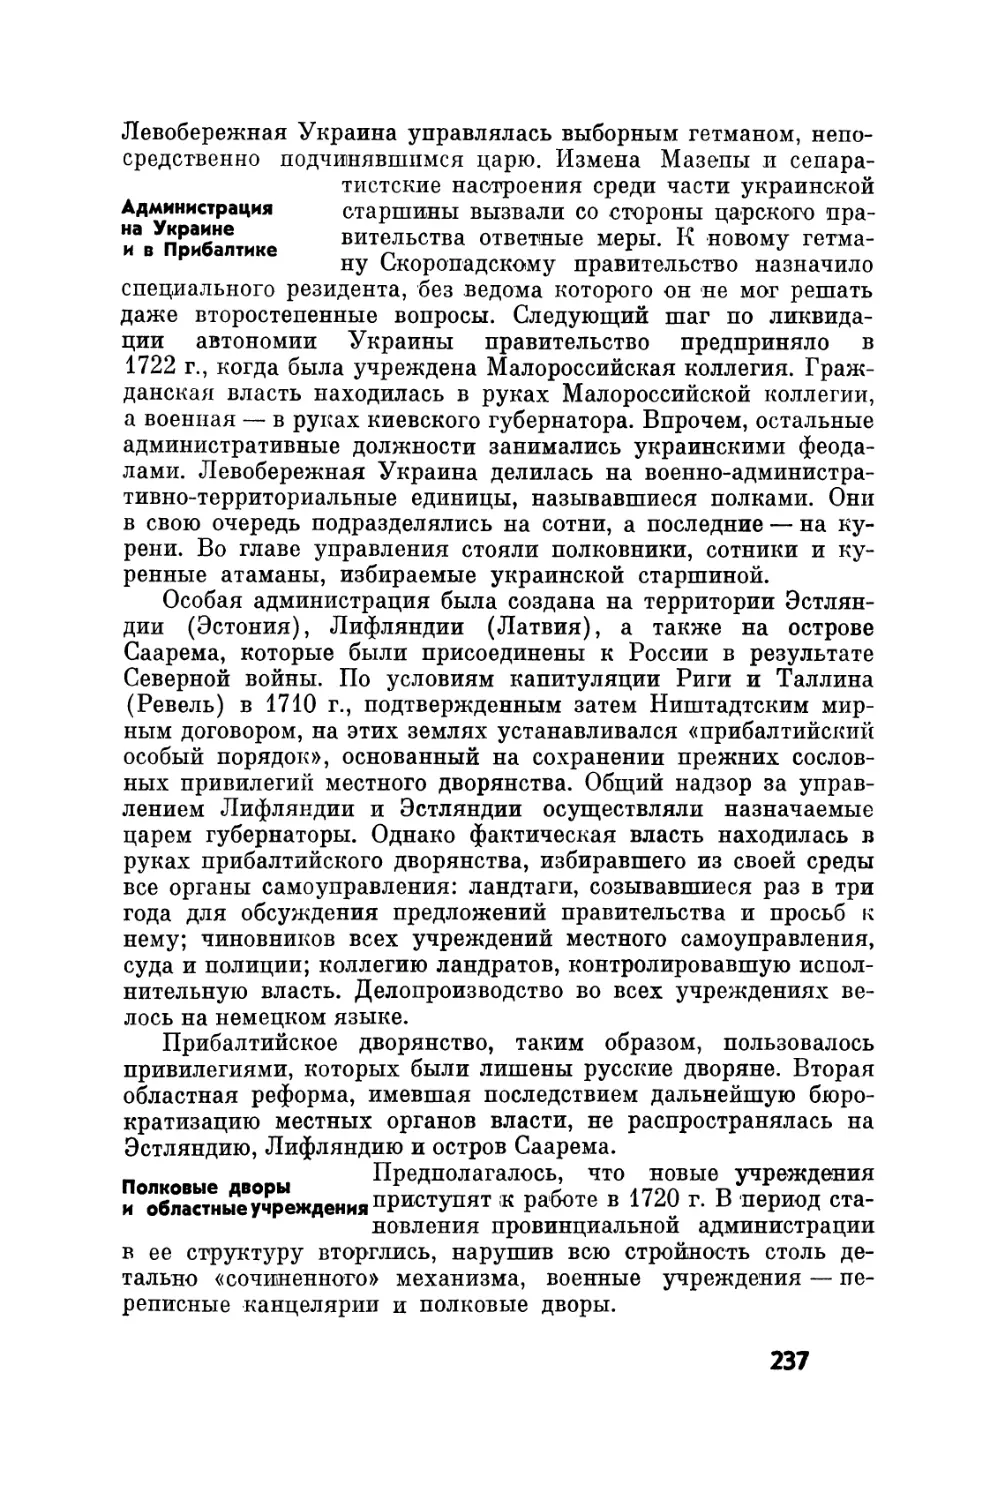 Администрация на Украине и в Прибалтике
Полковые дворы и областные учреждения